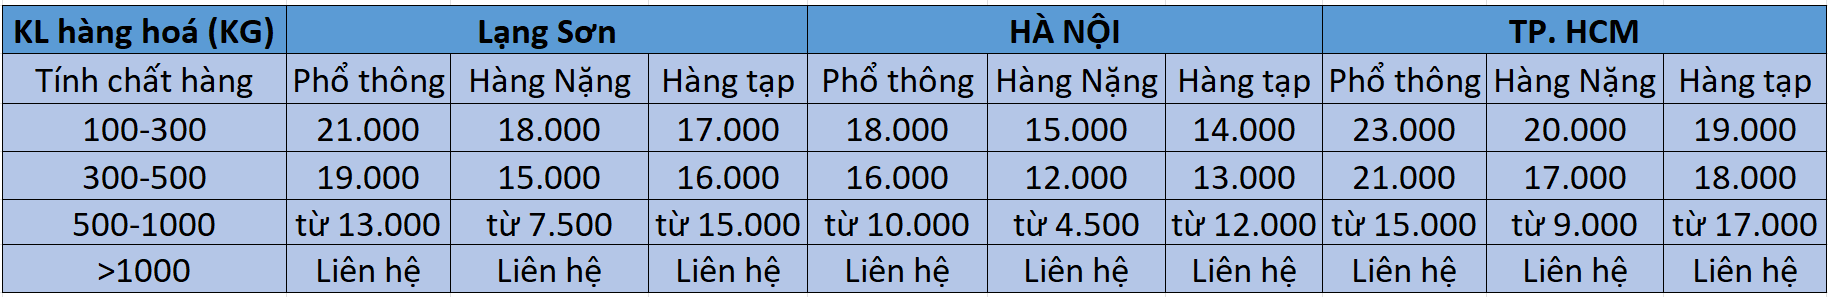 bảng giá vận chuyển hàng Trung Quốc - VIệt Nam